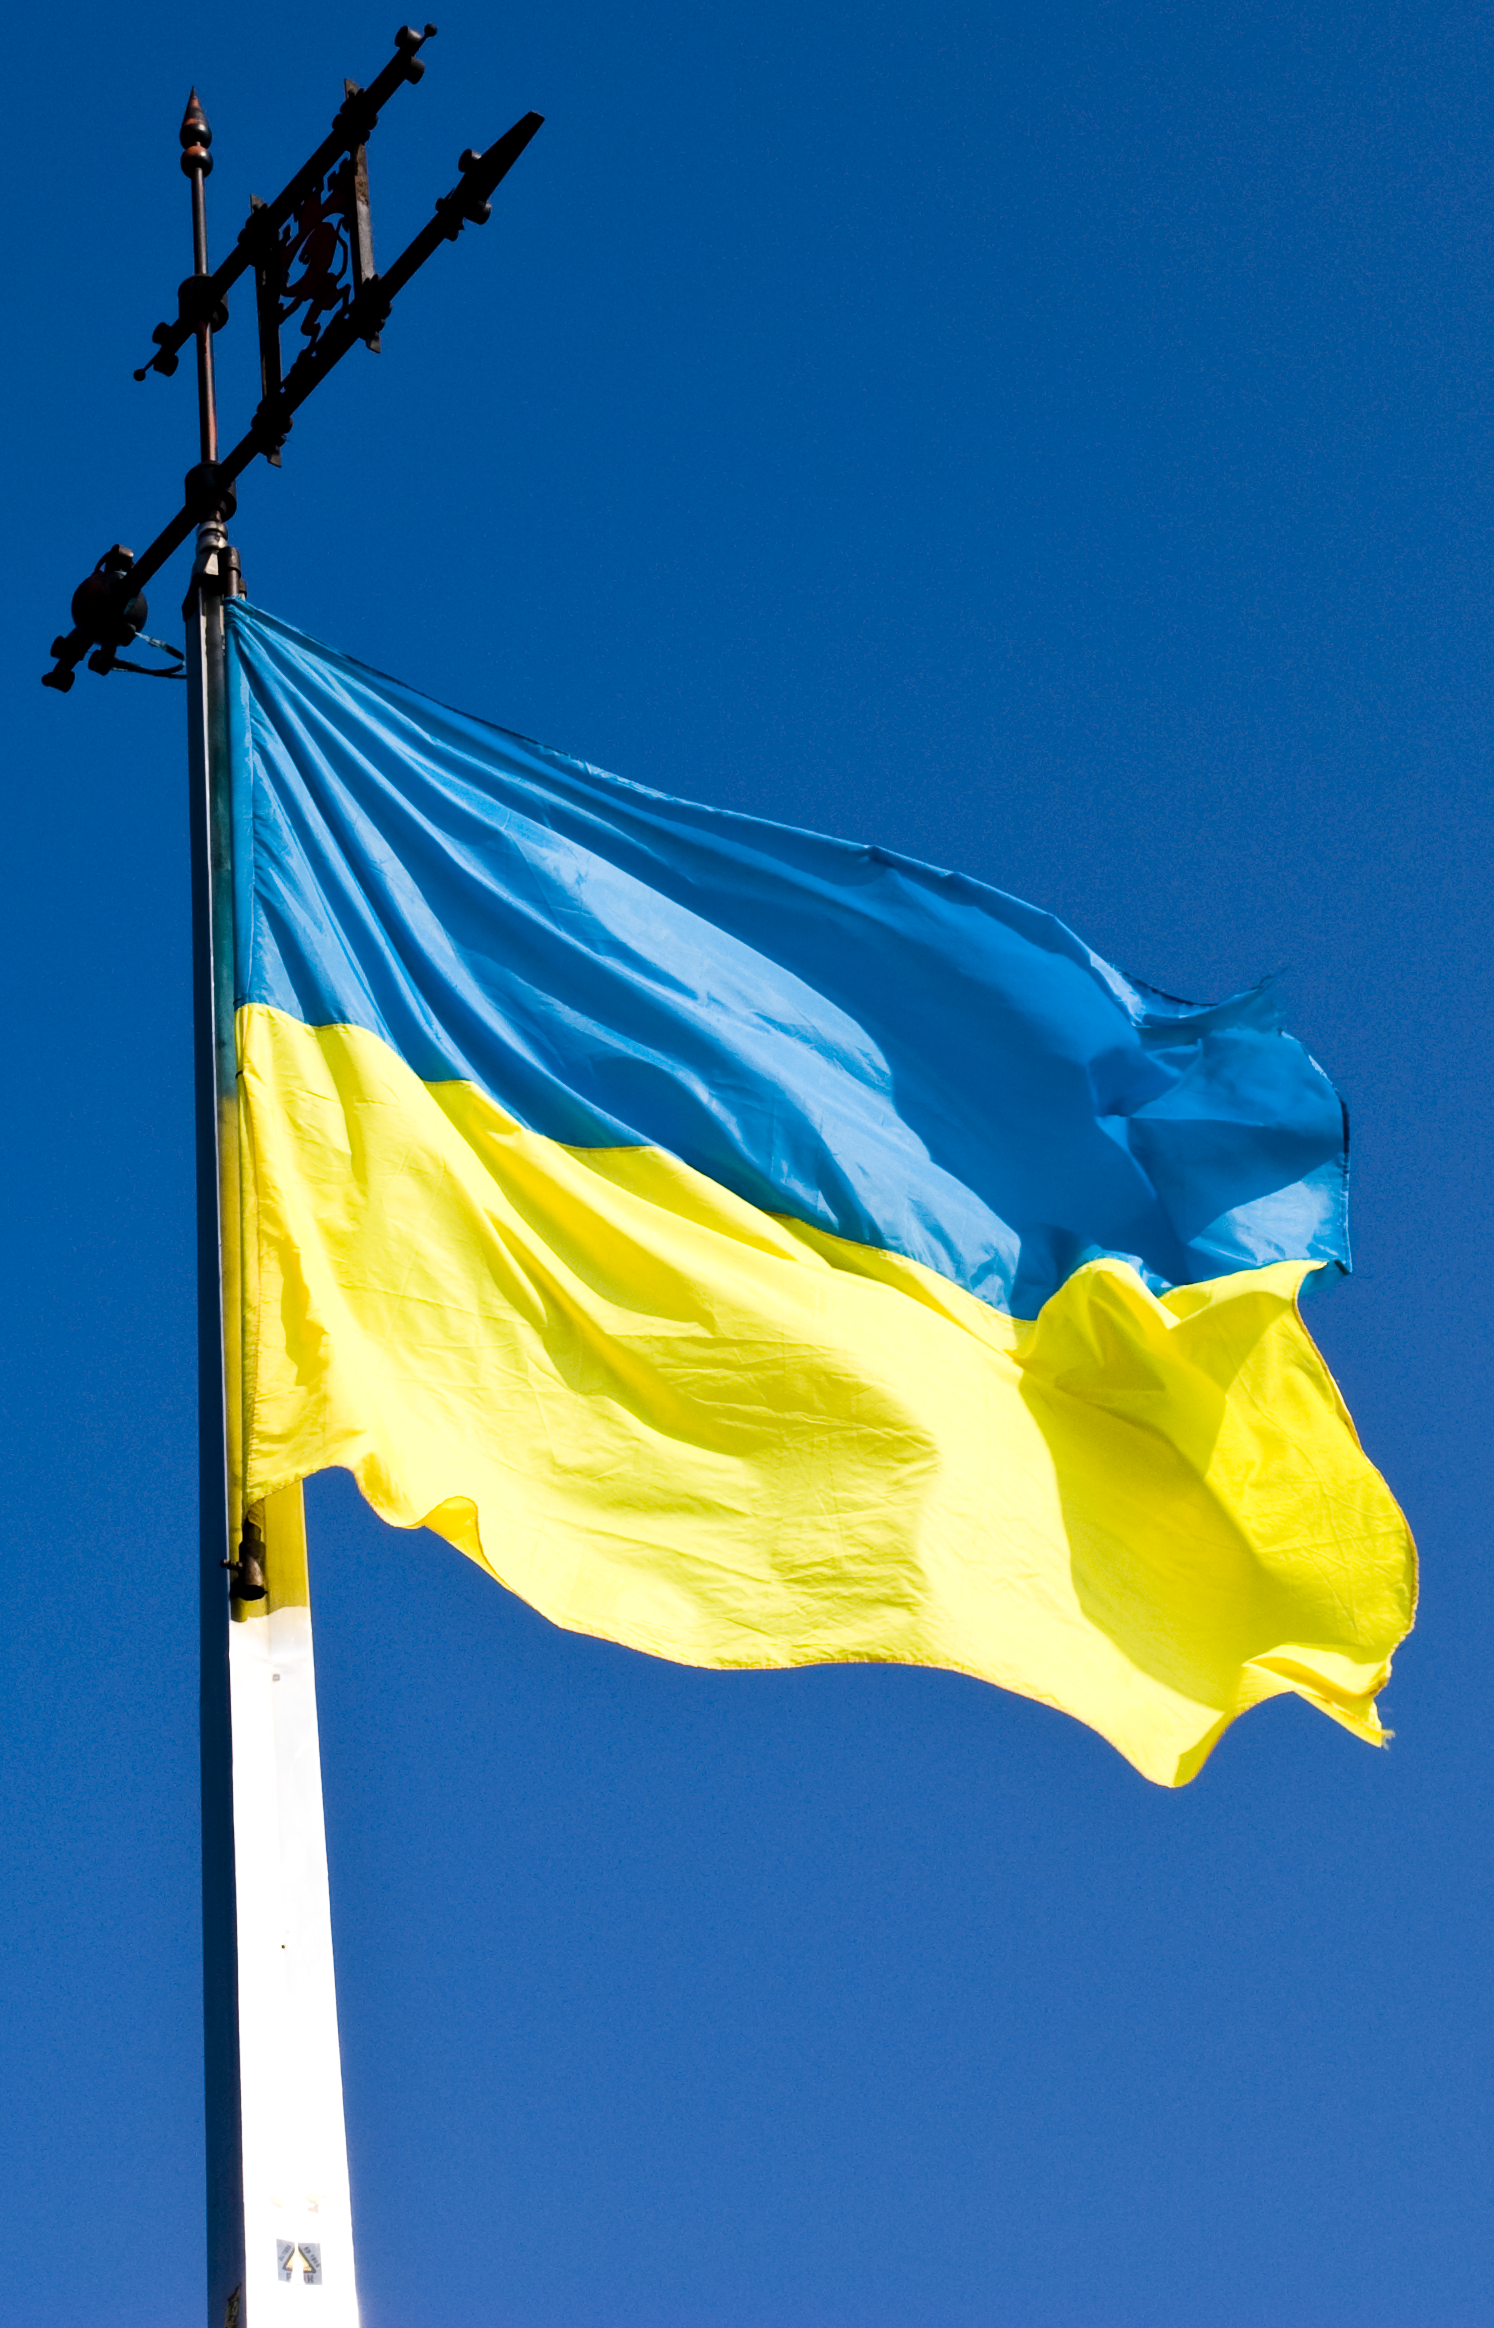 Ukraine Flagge (c) Von Theriddlen - Eigenes Werk, CC BY-SA 4.0, https://commons.wikimedia.org/w/index.php?curid=14850332